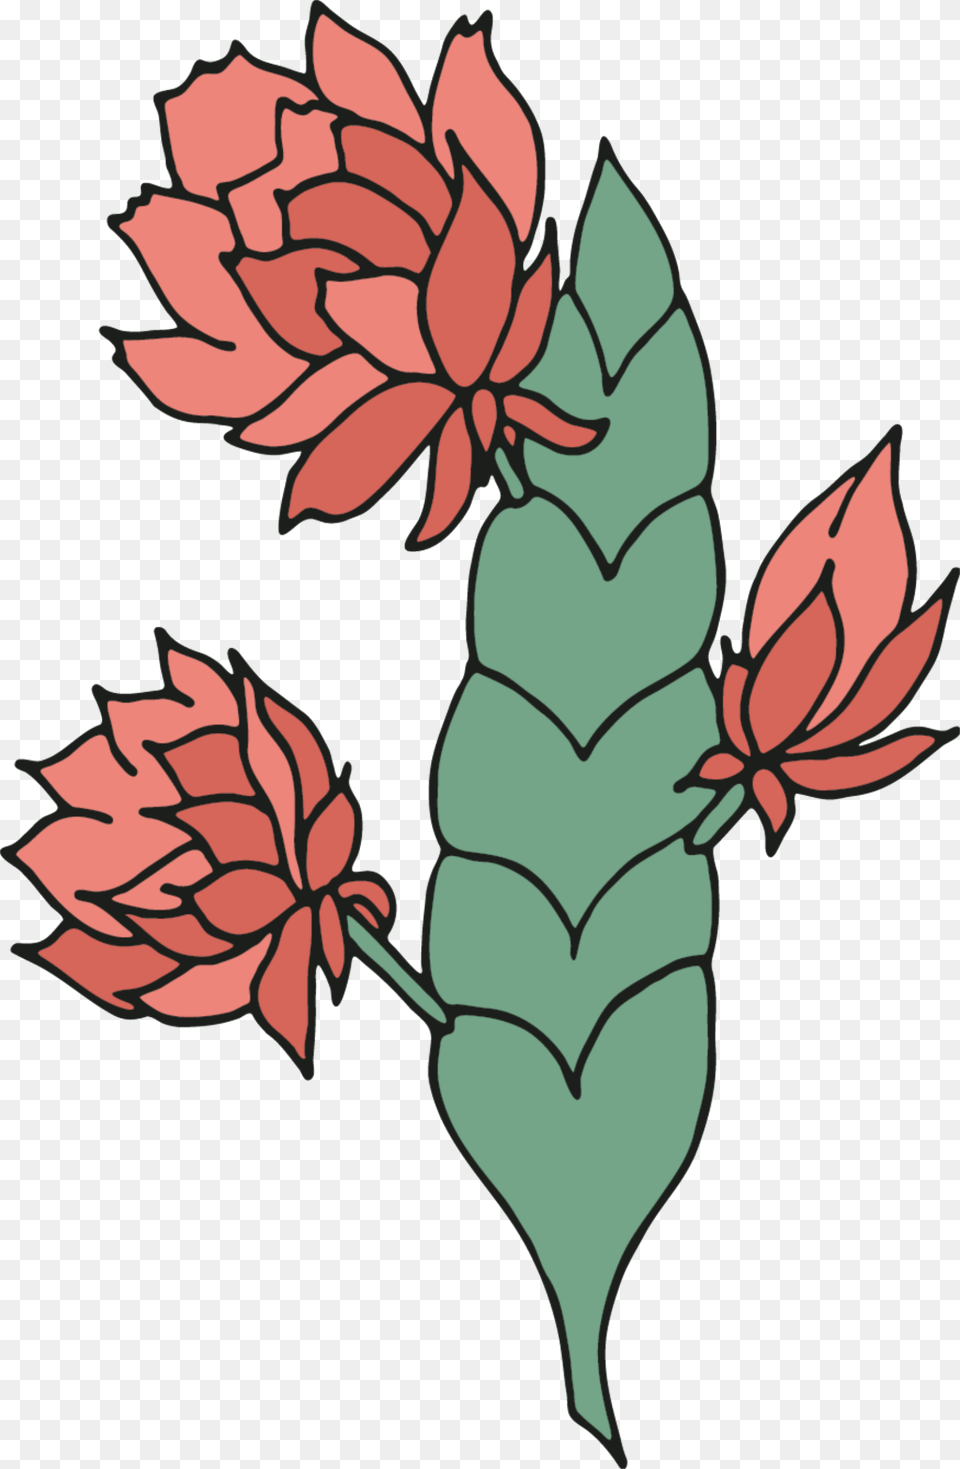 Flower Stem Vector Download On Heypik, Leaf, Plant, Rose, Art Png Image